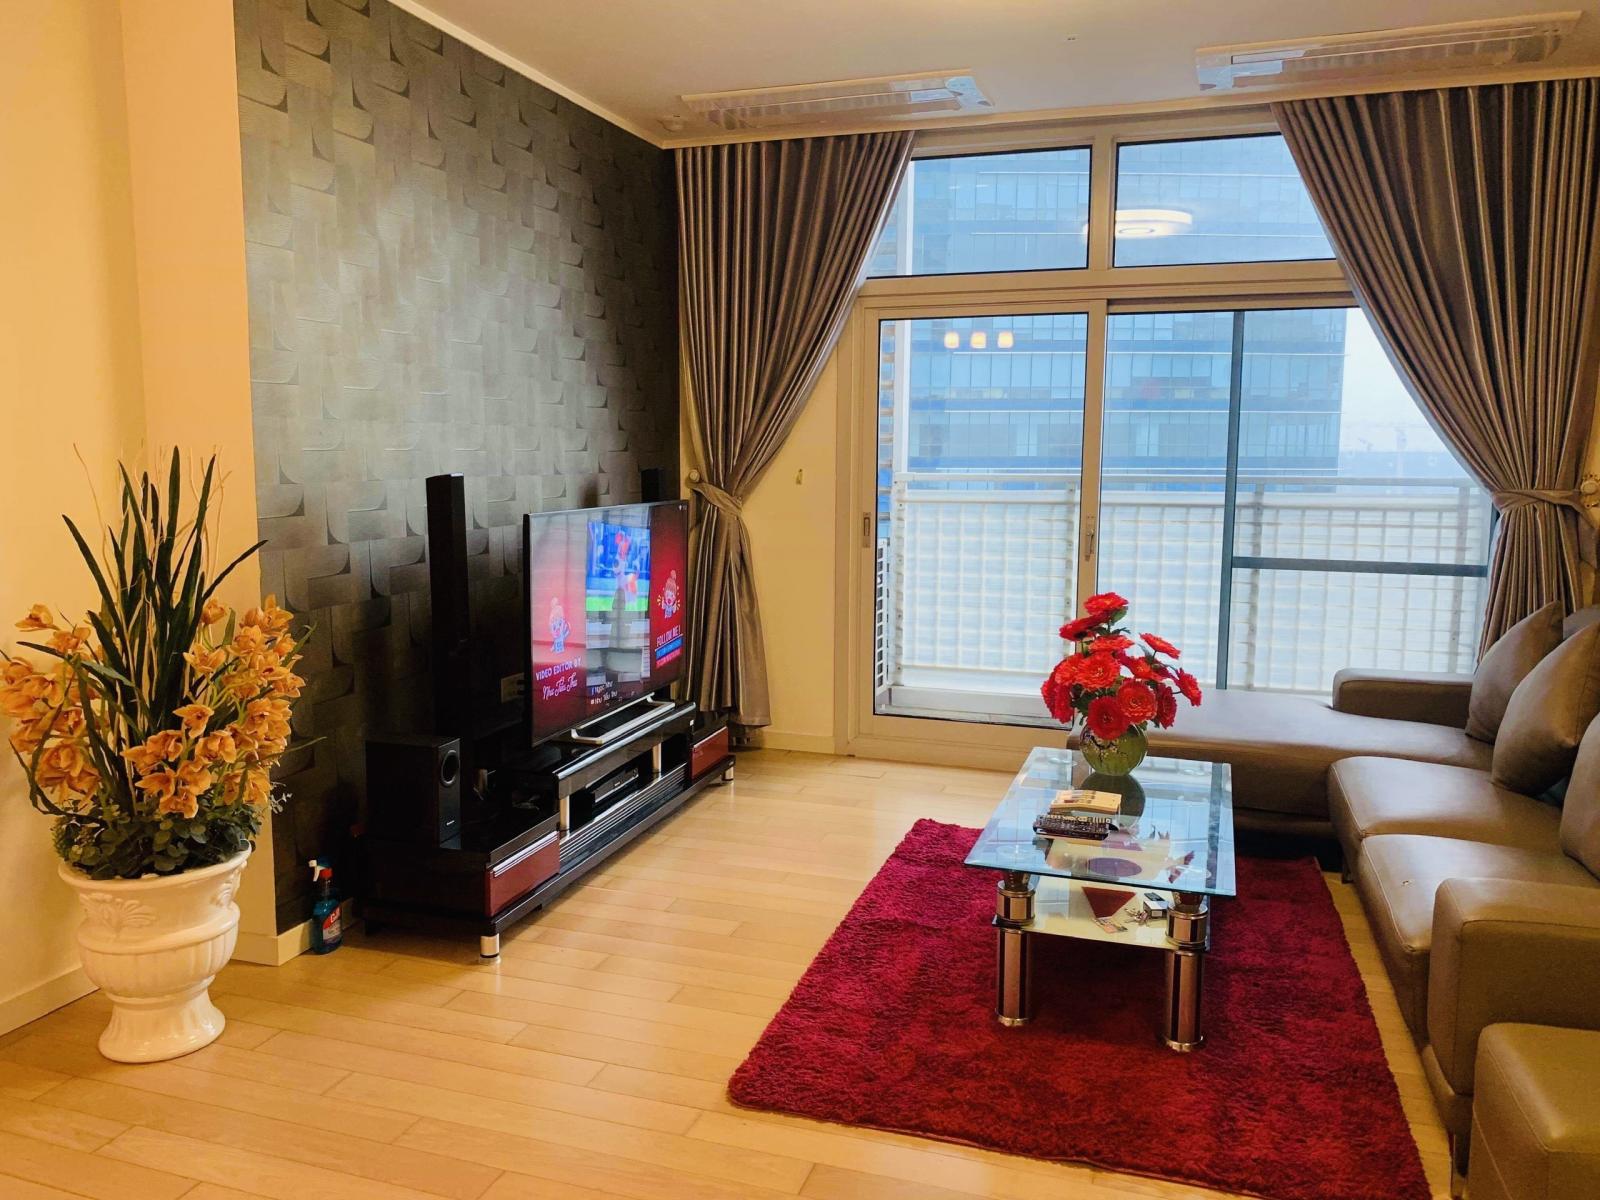 Cho thuê căn hộ 3 phòng ngủ chung cư Keangnam full nội thất cao cấp, vào ở được ngay (ảnh thật) 1010525